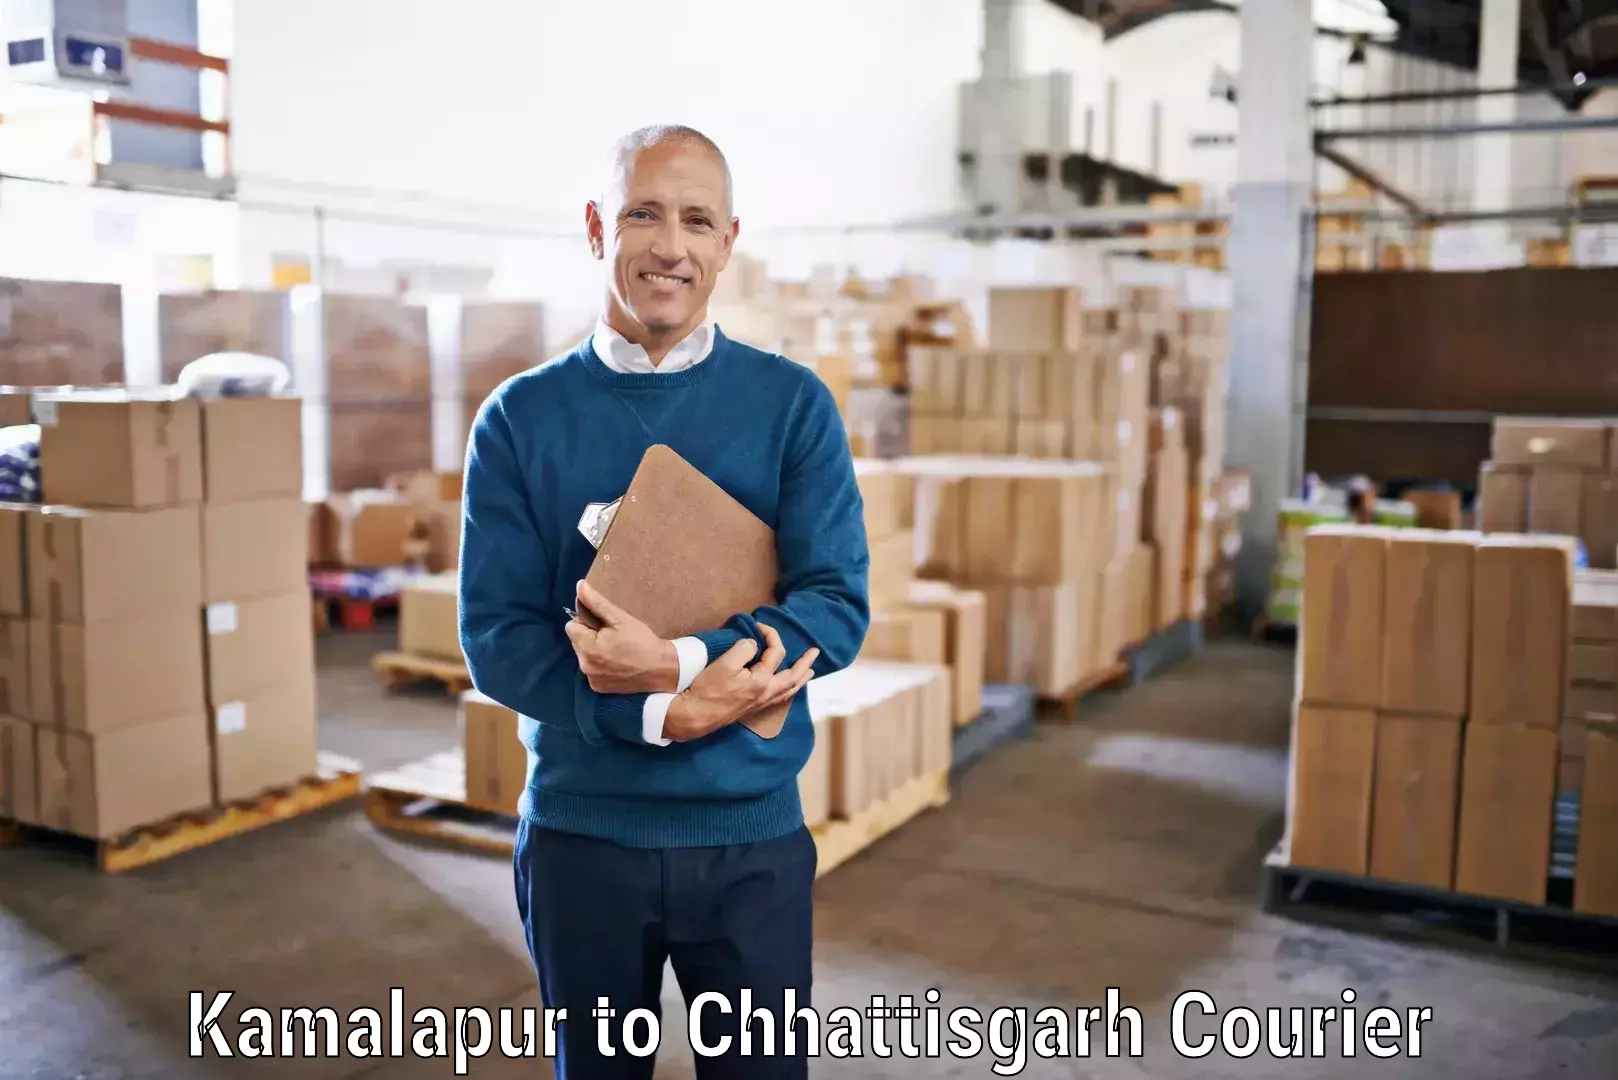 Customer-centric shipping Kamalapur to Raigarh